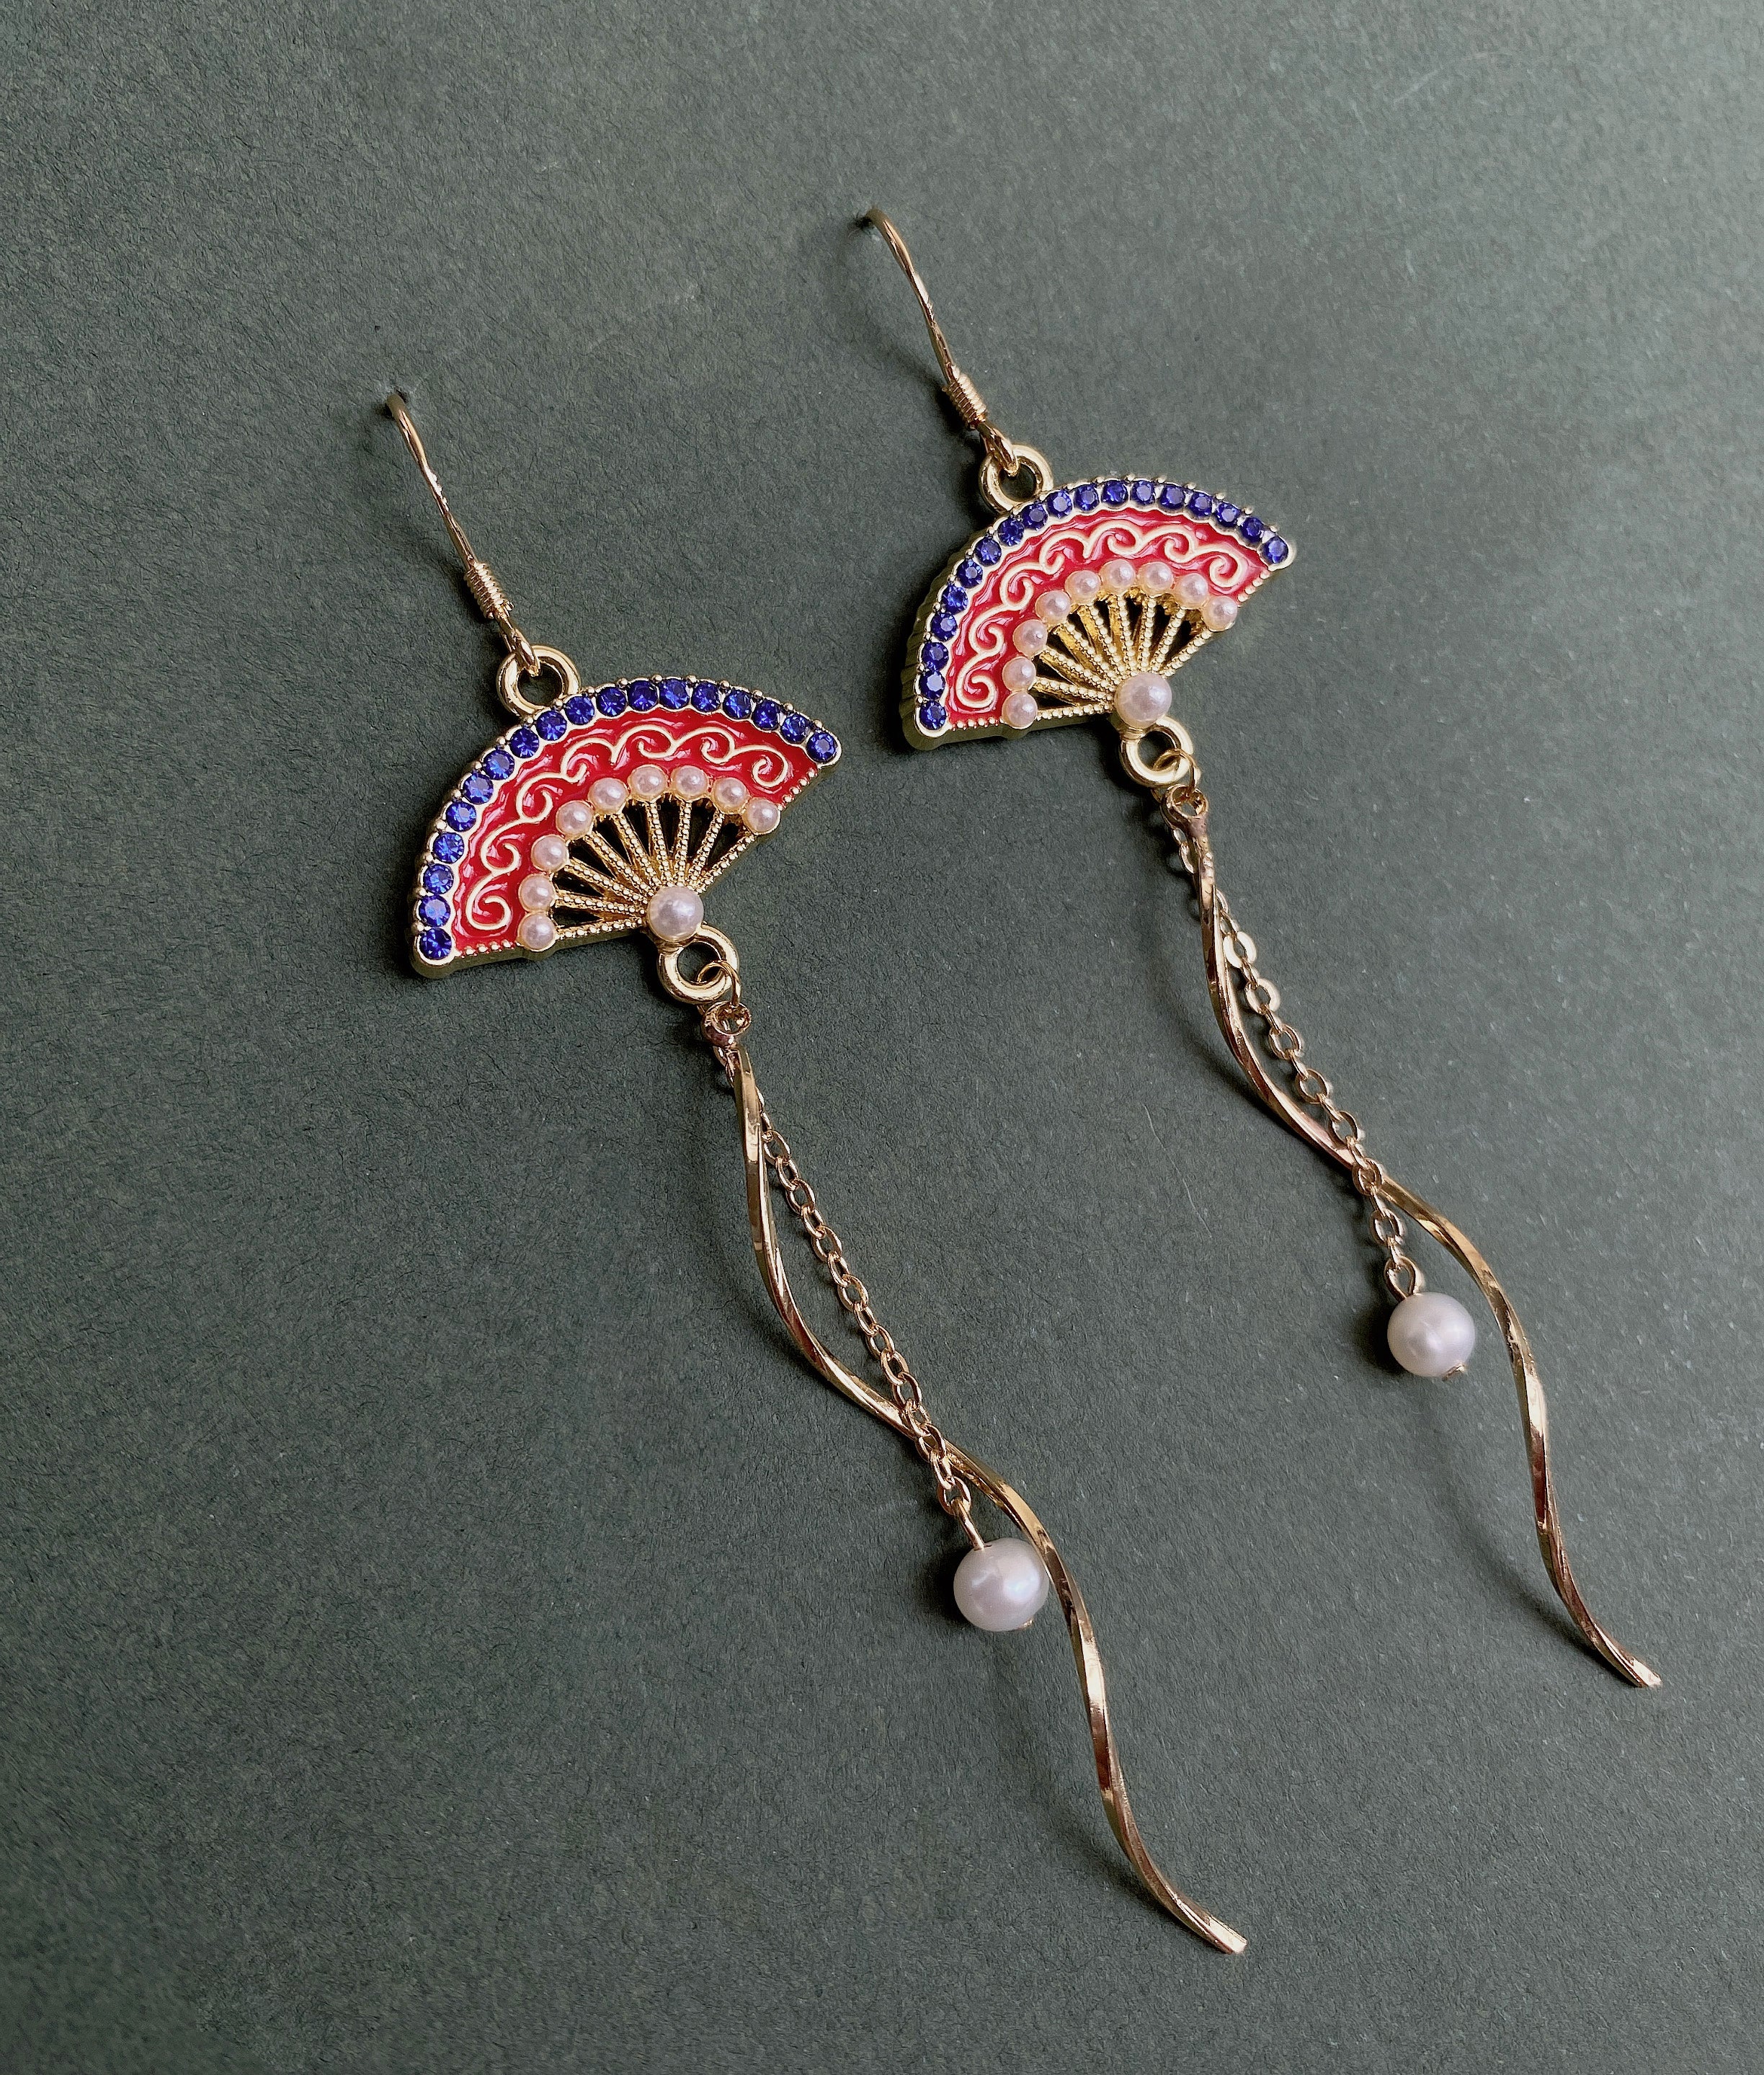 Chinese Style Red Fan Drop Handmade Earrings